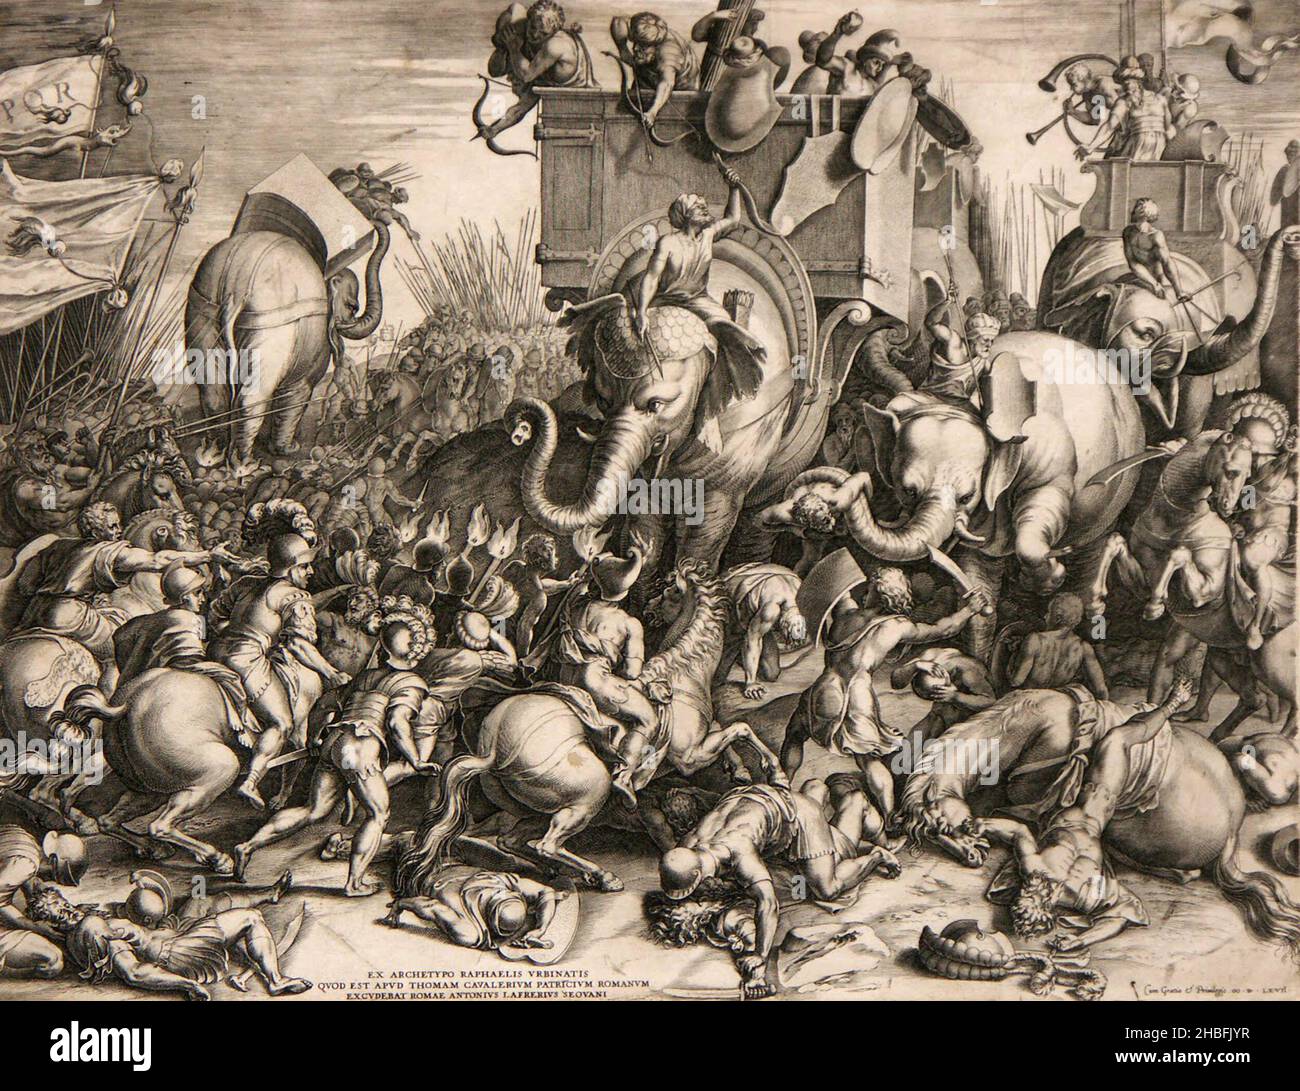 Hannibal und seine Elefanten kämpfen in der Schlacht von Zama (in Yunisia) gegen Scipio Africanus während der Punischen Kriege (die Kriege gegen Karthago) Stockfoto